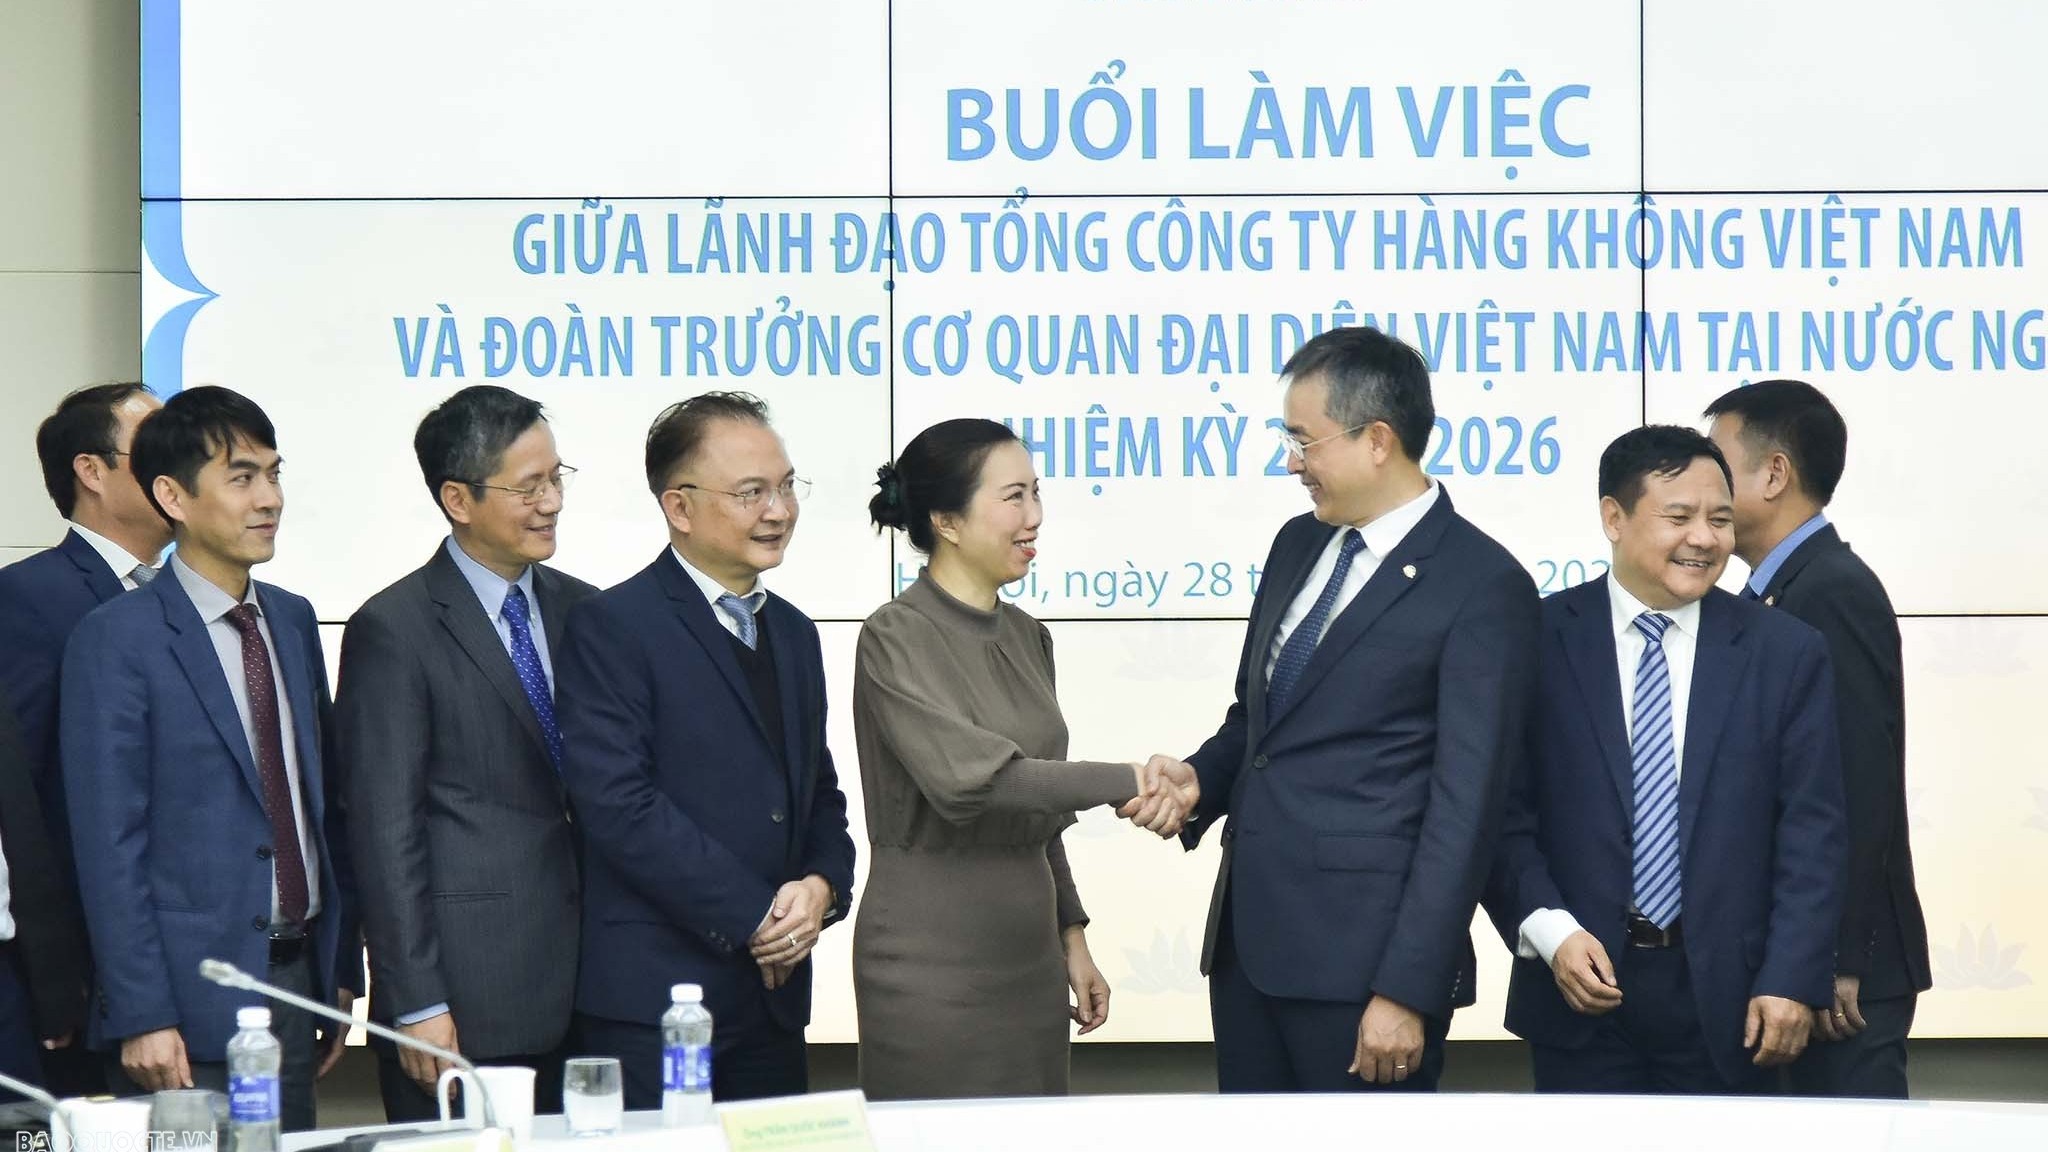 Đoàn Trưởng Cơ quan đại diện Việt Nam ở nước ngoài nhiệm kỳ 2023-2026 làm việc với Vietnam Airlines